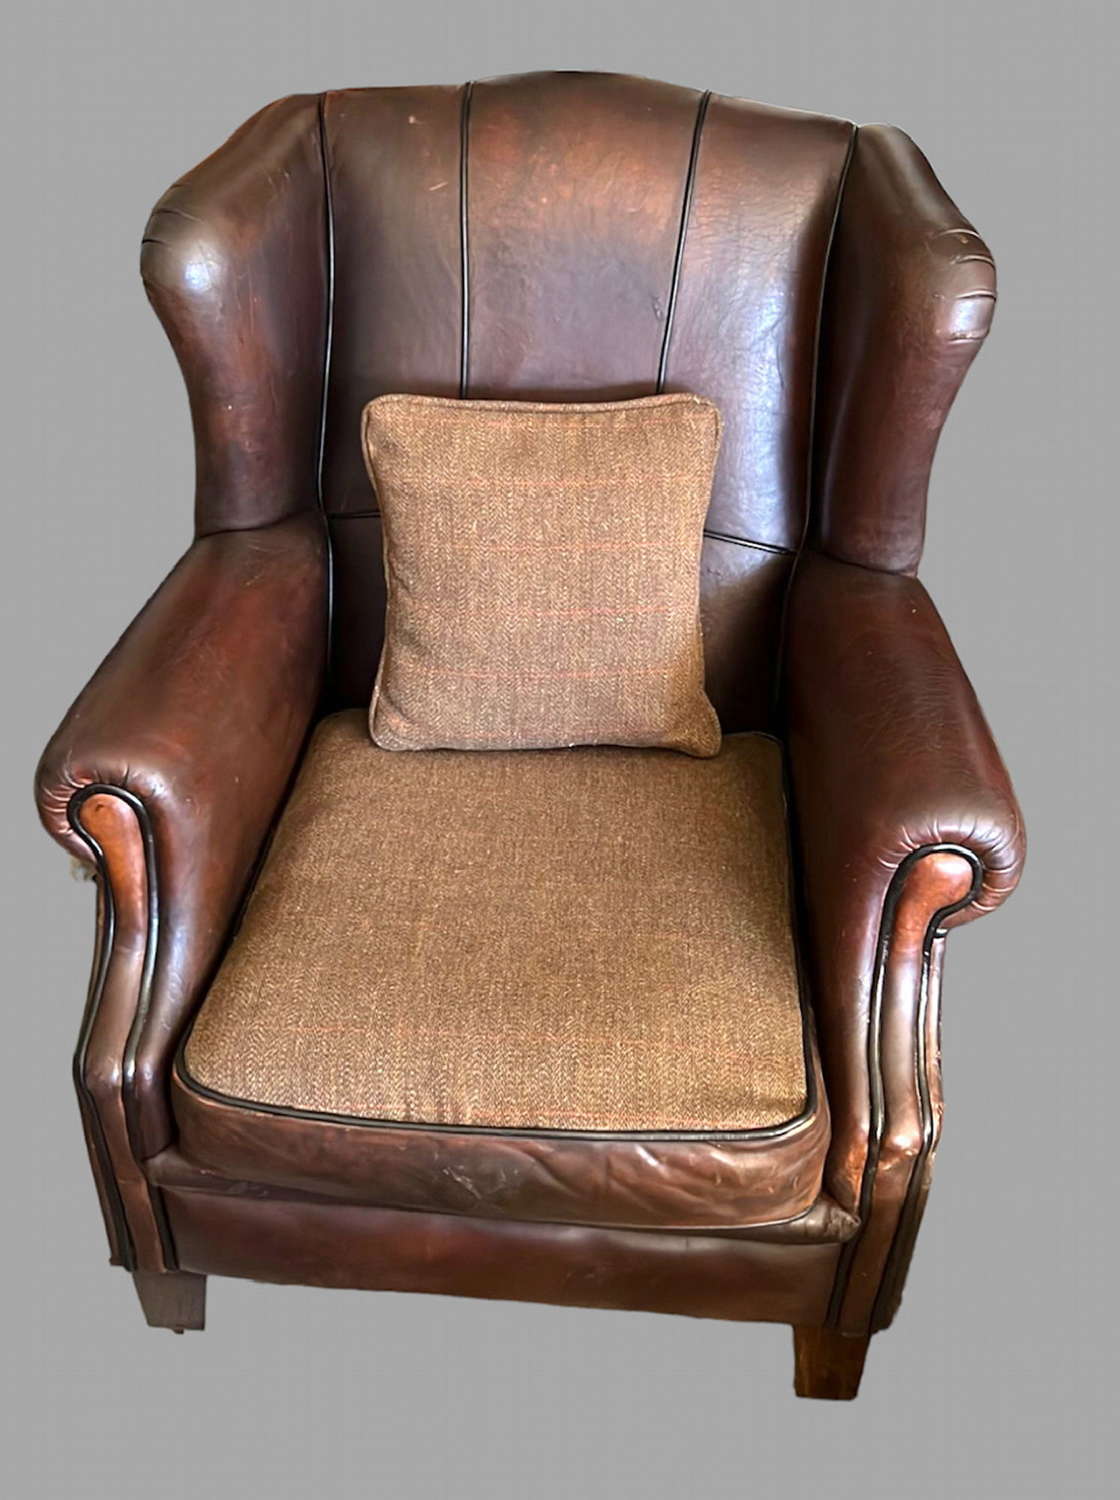 A leather Armchair